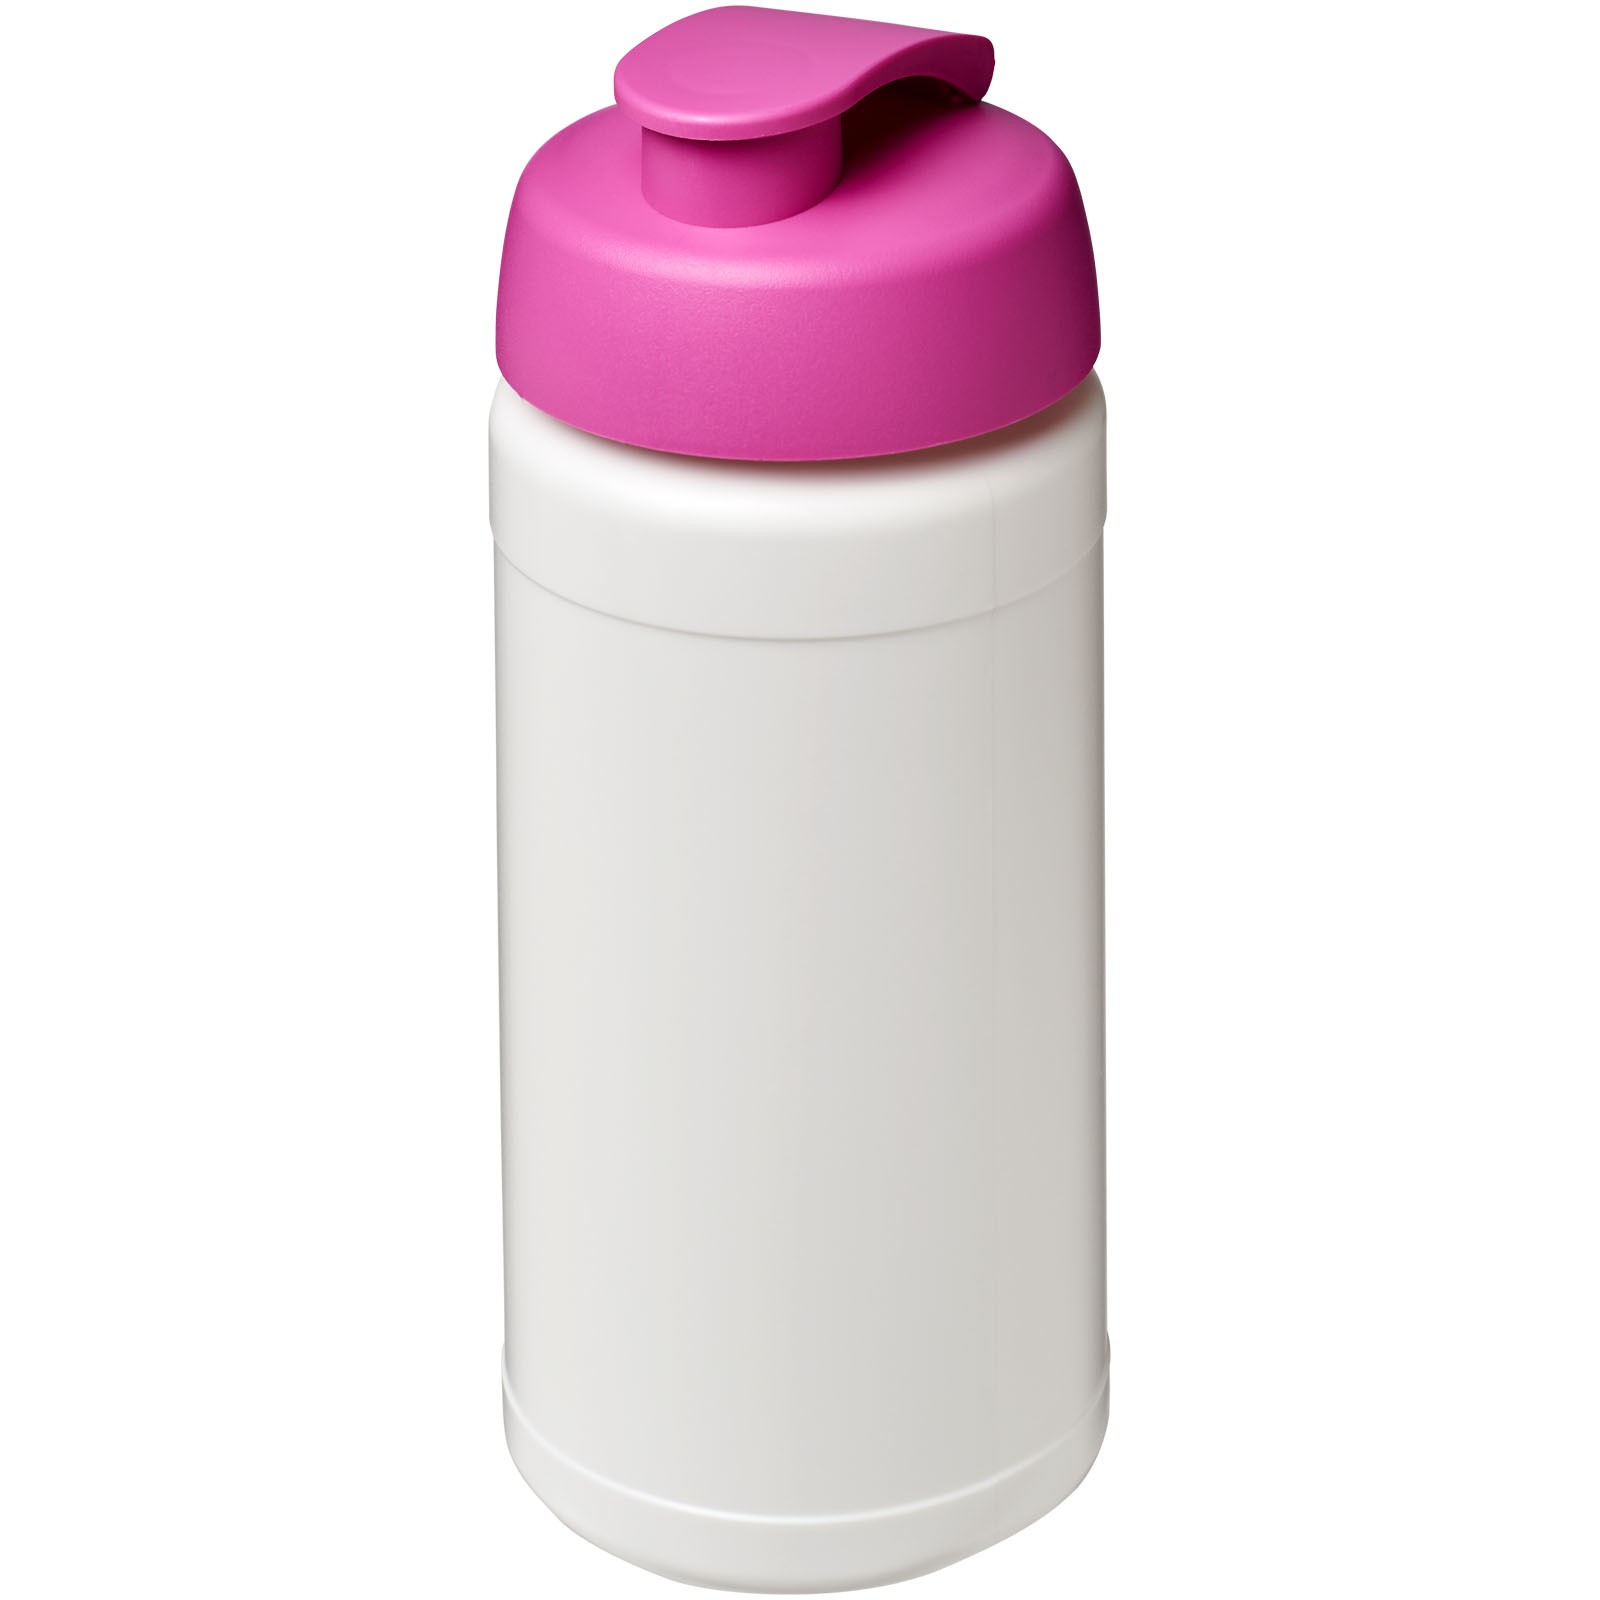 Sportovní láhev s vyklápěcím víčkem Baseline® Plus 500 ml - Bílá / Růžová